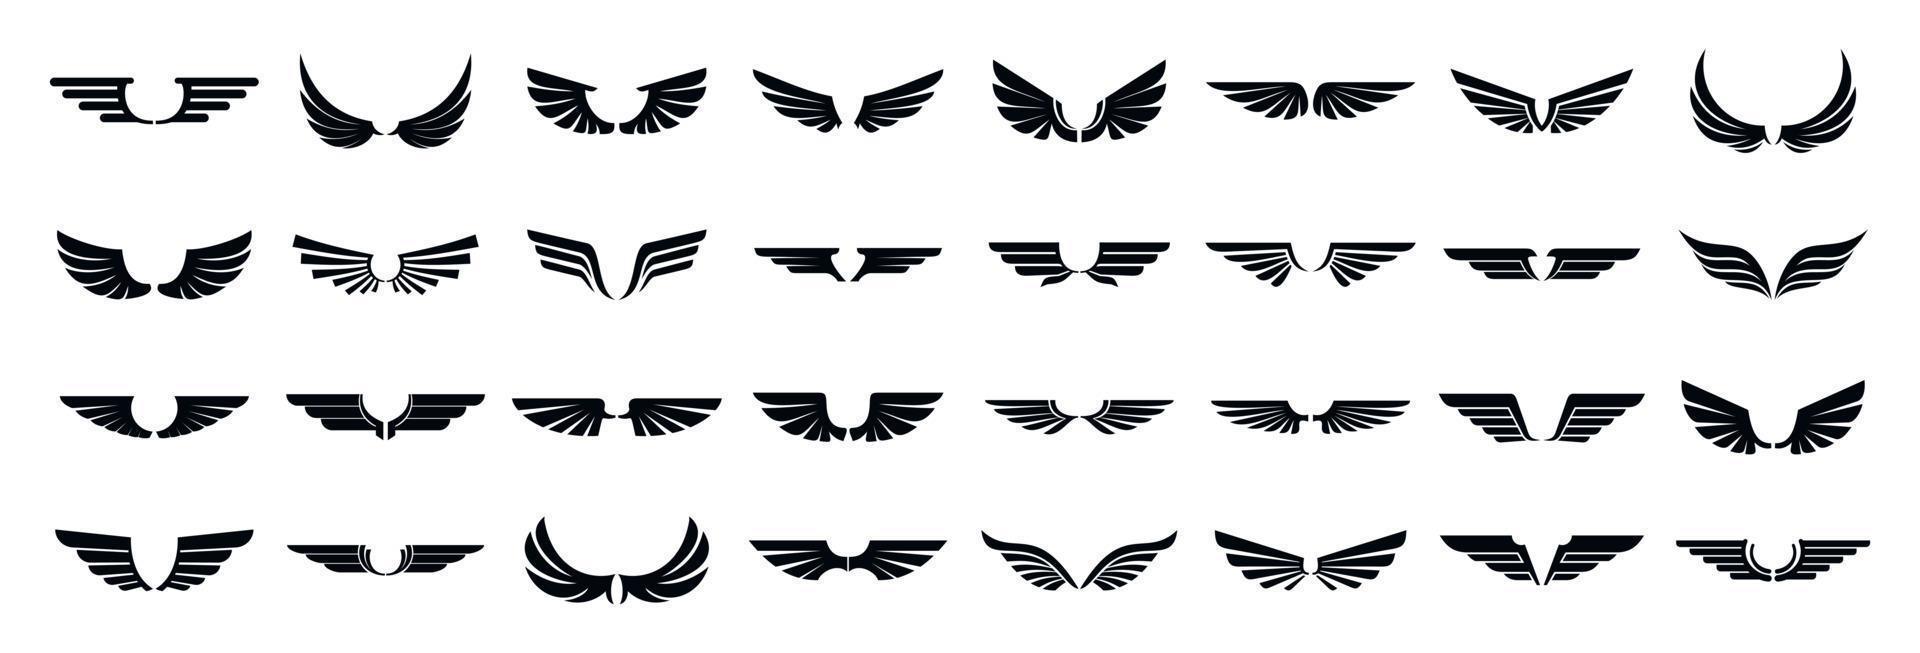 conjunto de iconos de alas, estilo simple vector